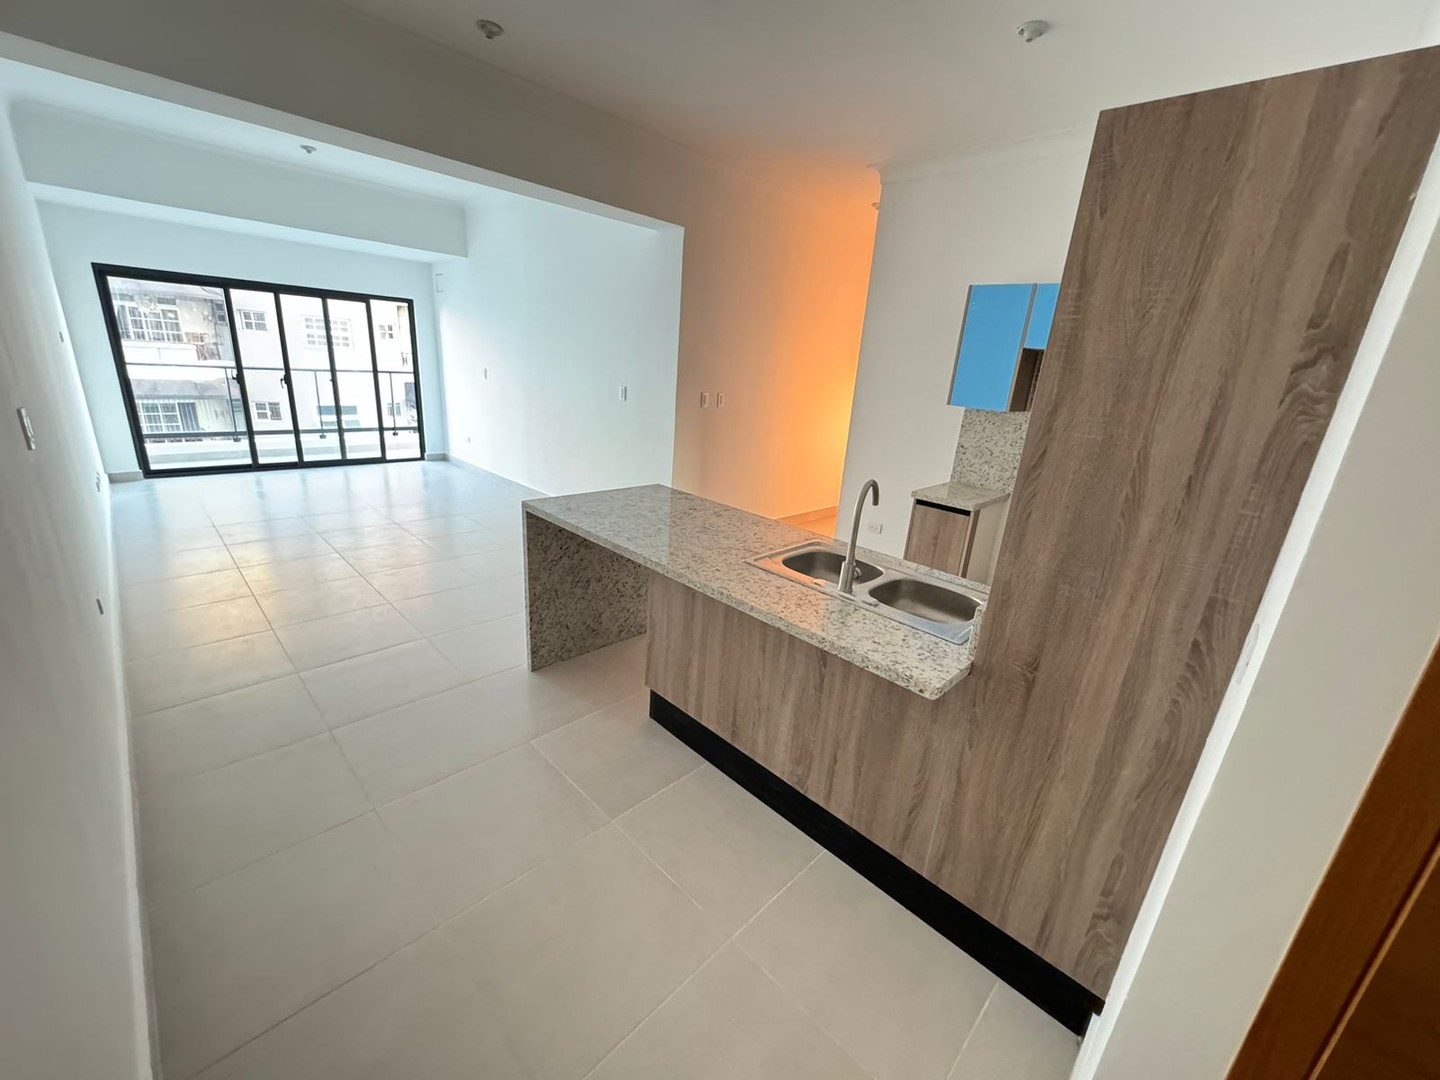 apartamentos - Apartamento Nuevo en Venta
BELLA VISTA SUR
USD 242,000.00
Mantenimiento: RD$9mil 0